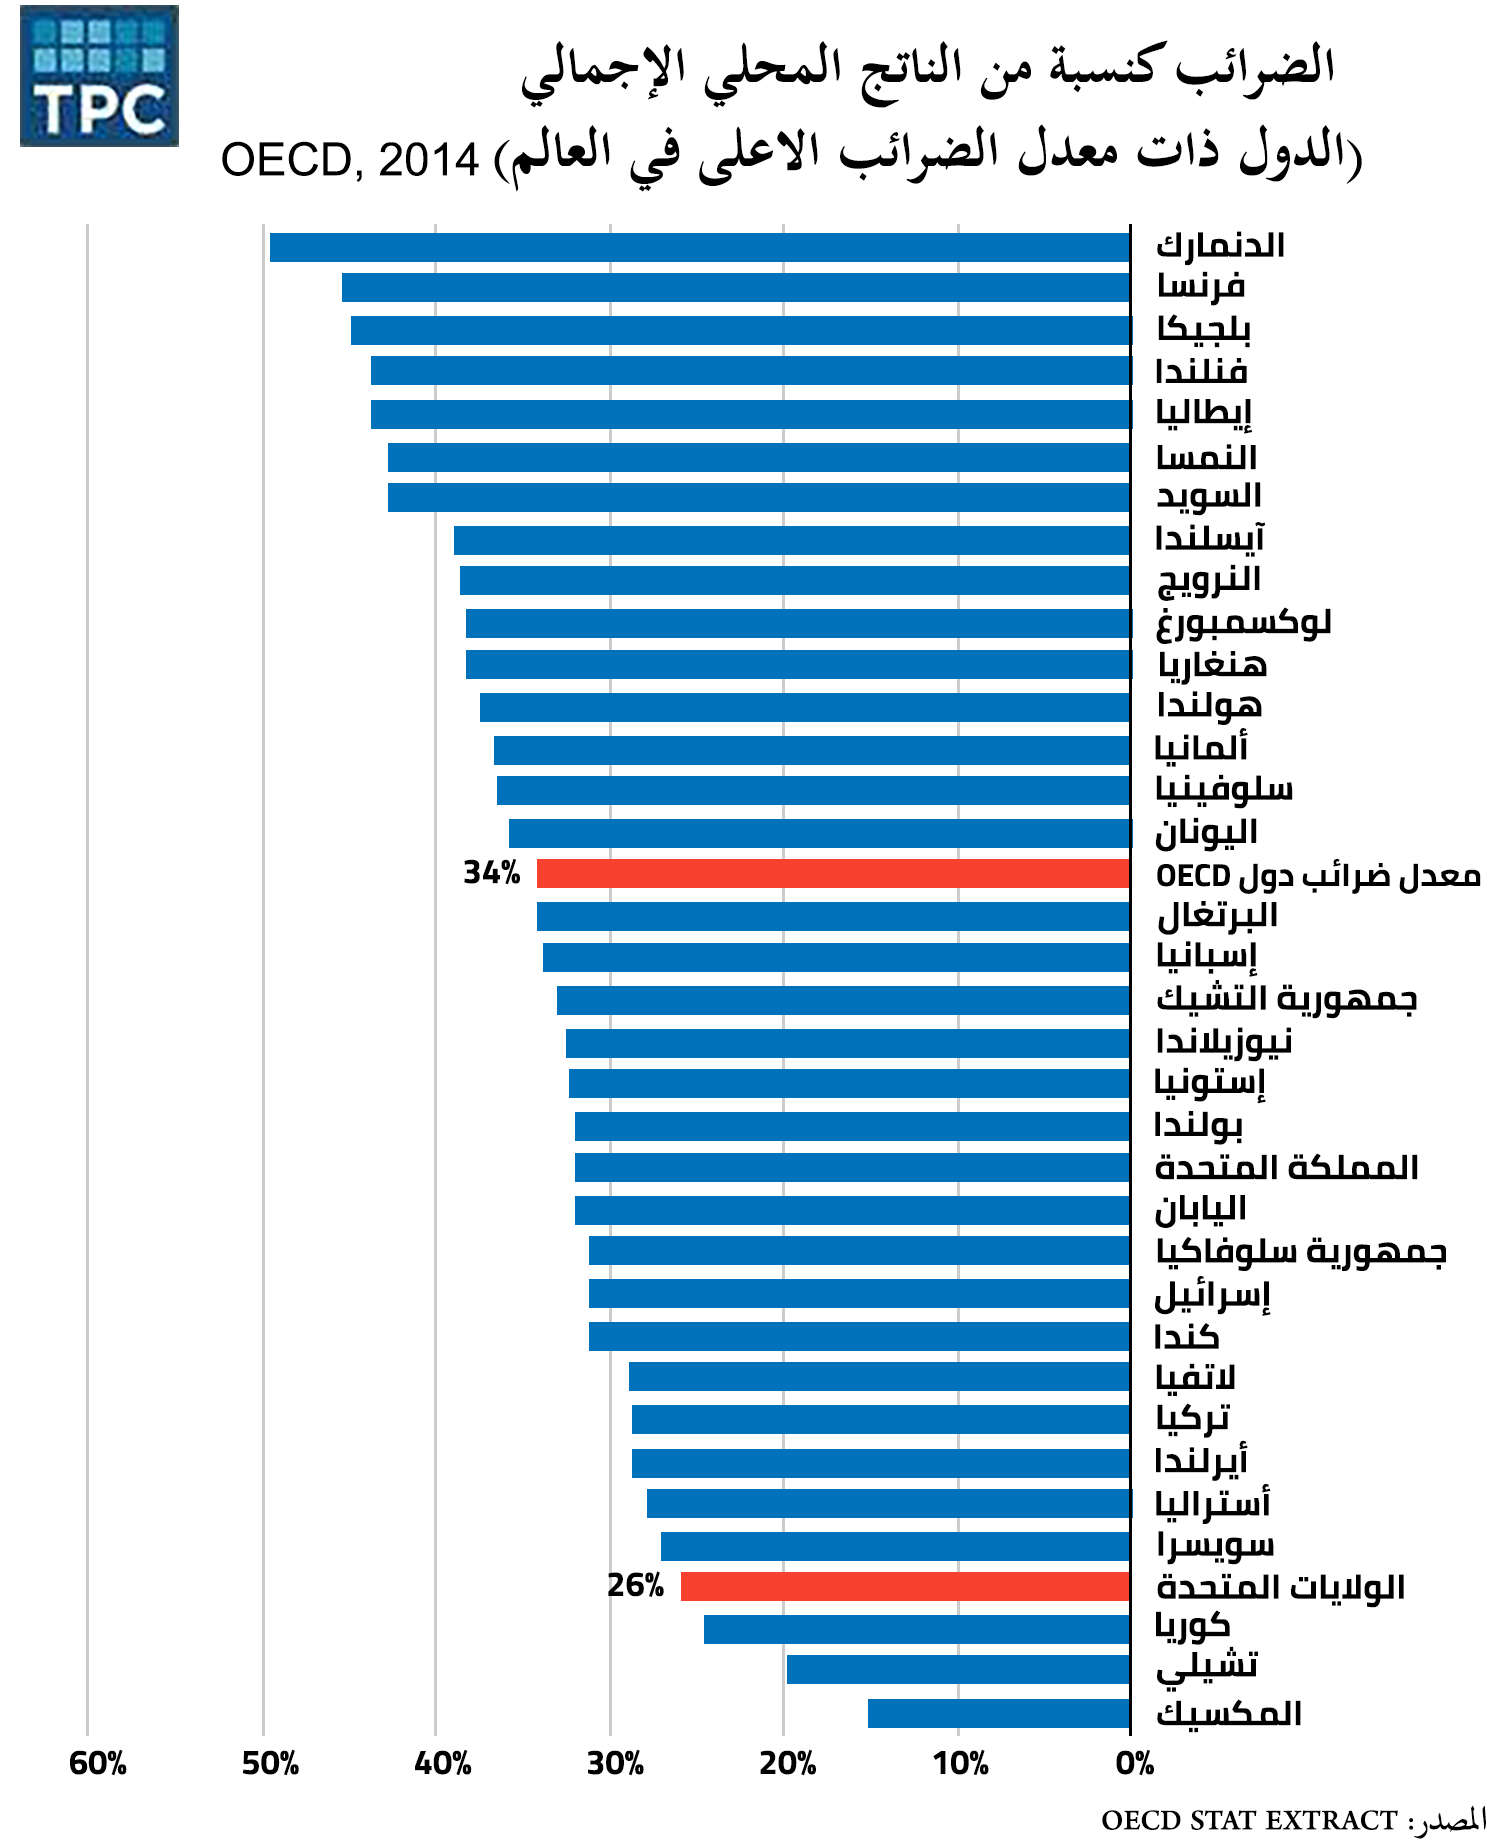 الضرائب كنسبة من الناتج المحلي الإجمالي  (الدول ذات معدل الضرائب الأعلى في العالم)